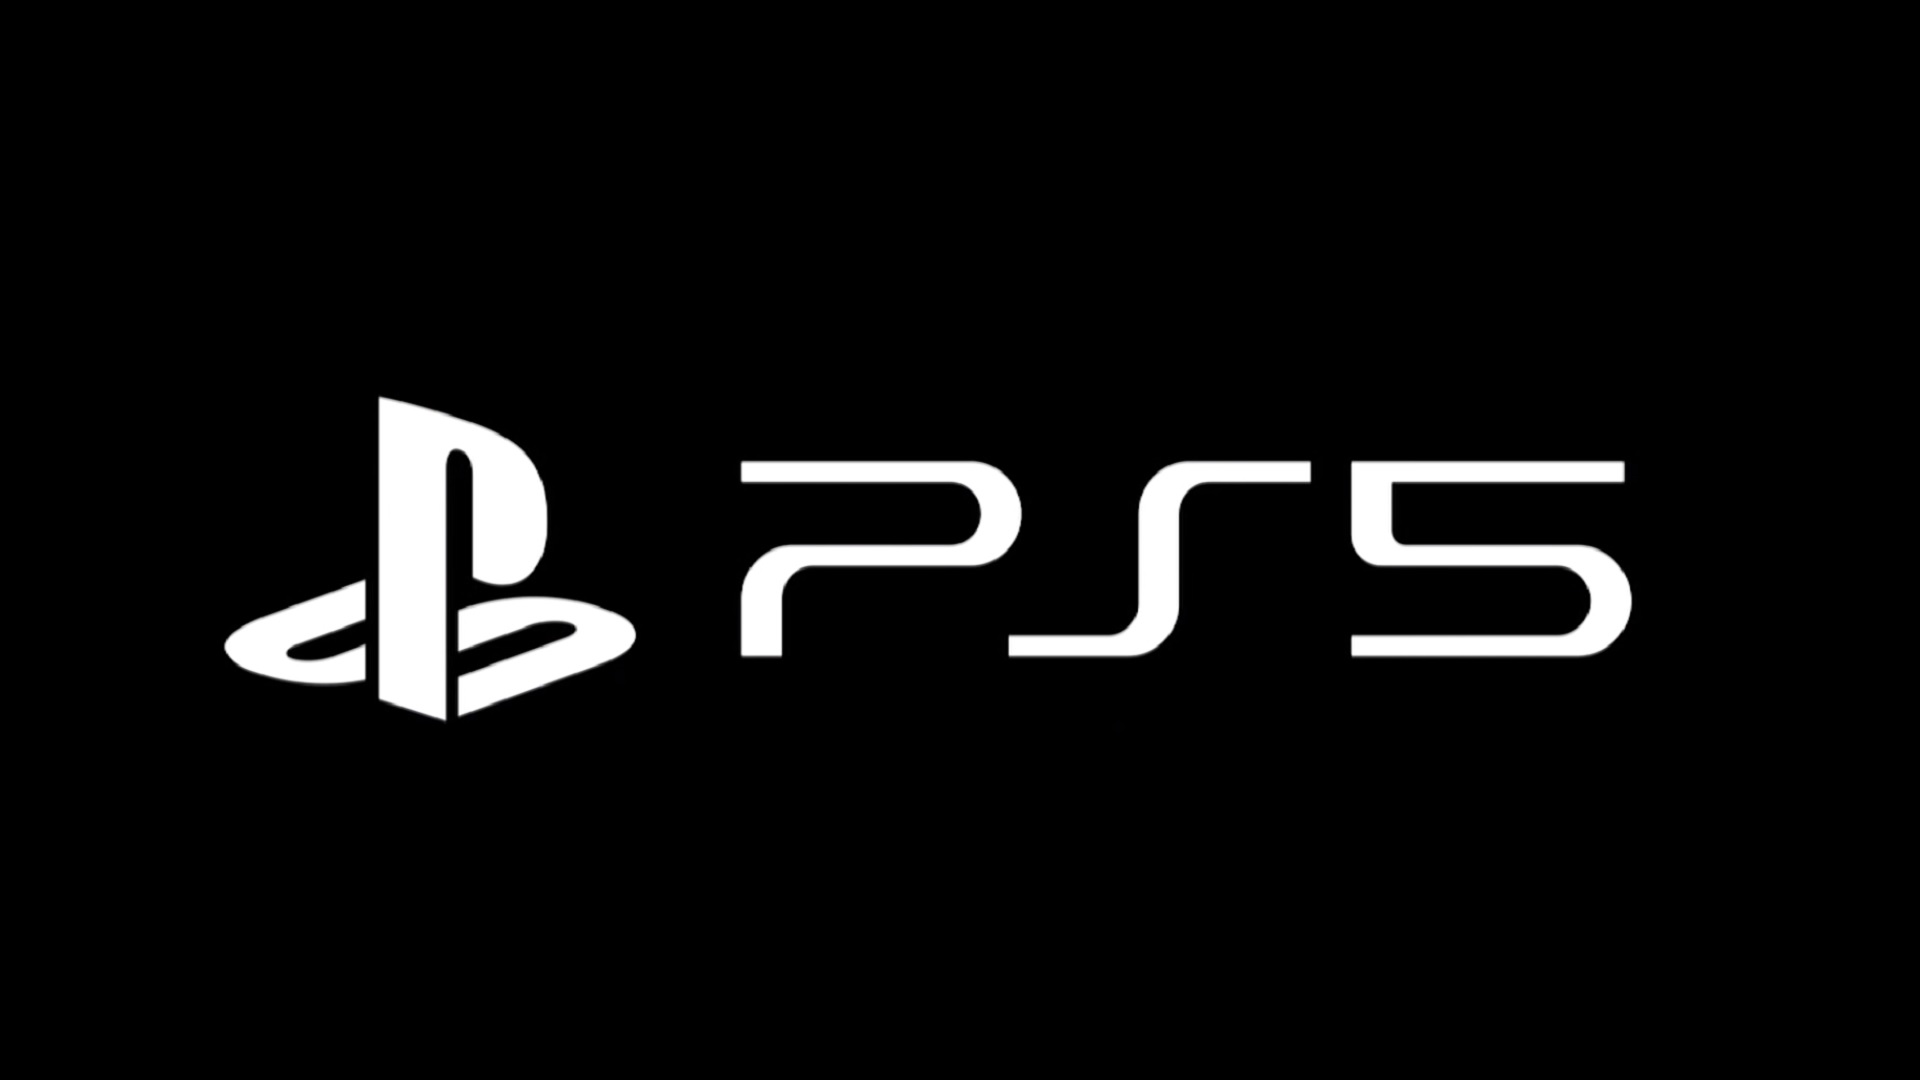 ข่าวลือ! Sony เตรียมเผยรายชื่อเกมใหม่ของ PS5 ในเดือนมิถุนายนนี้